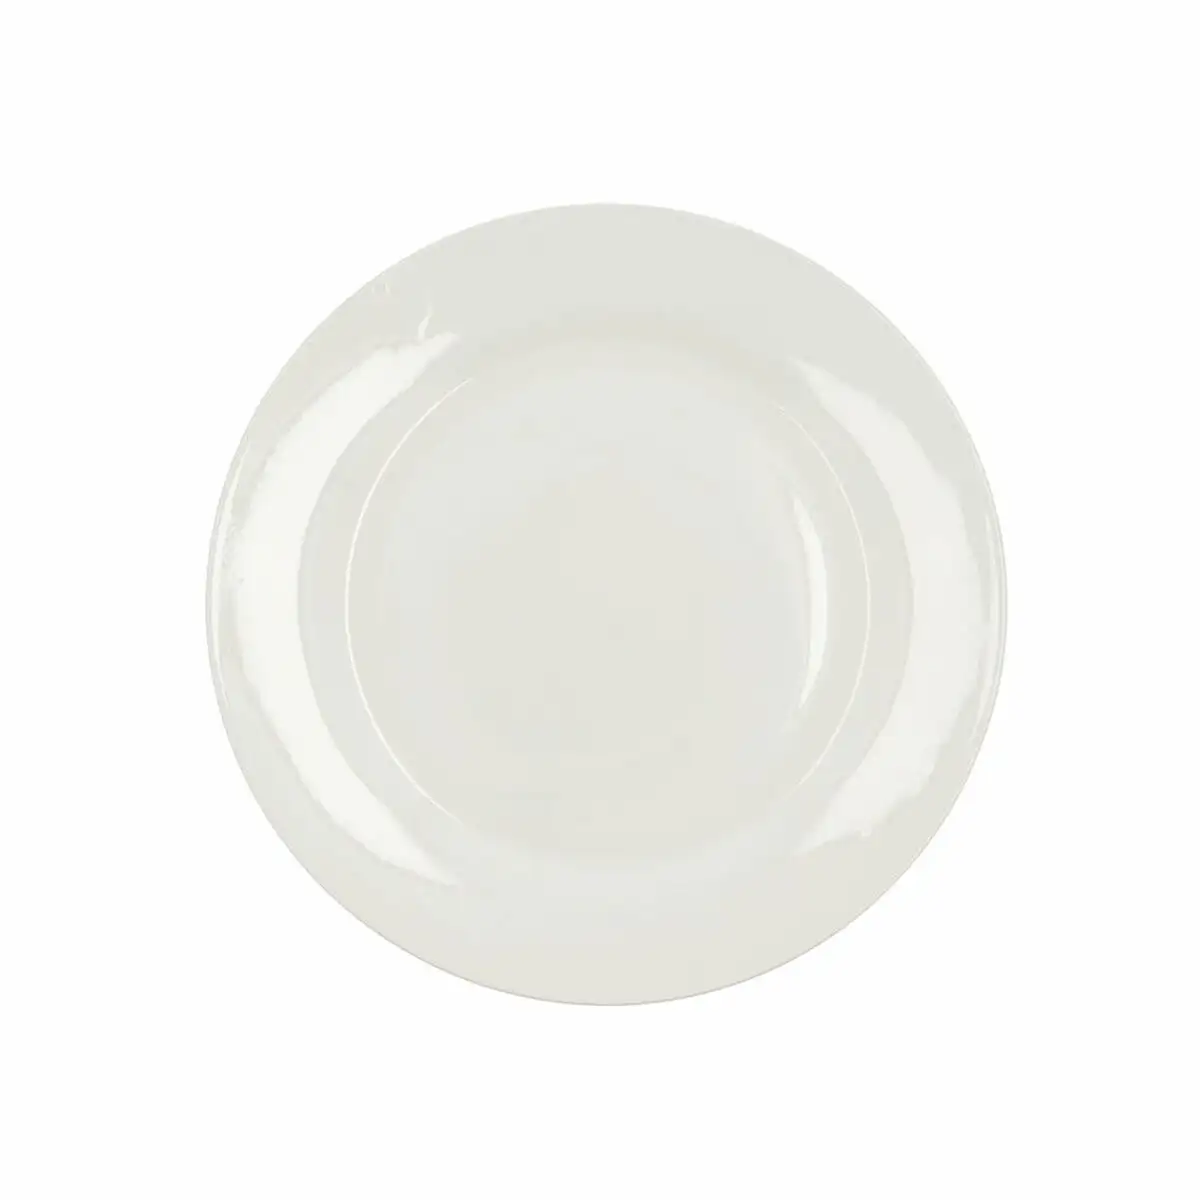 Assiette plate bidasoa lis ceramique blanc 26 25 cm pack 12x _1536. DIAYTAR SENEGAL - L'Art de Vivre le Shopping Inspiré. Parcourez notre catalogue et choisissez des produits qui reflètent votre passion pour la beauté et l'authenticité.